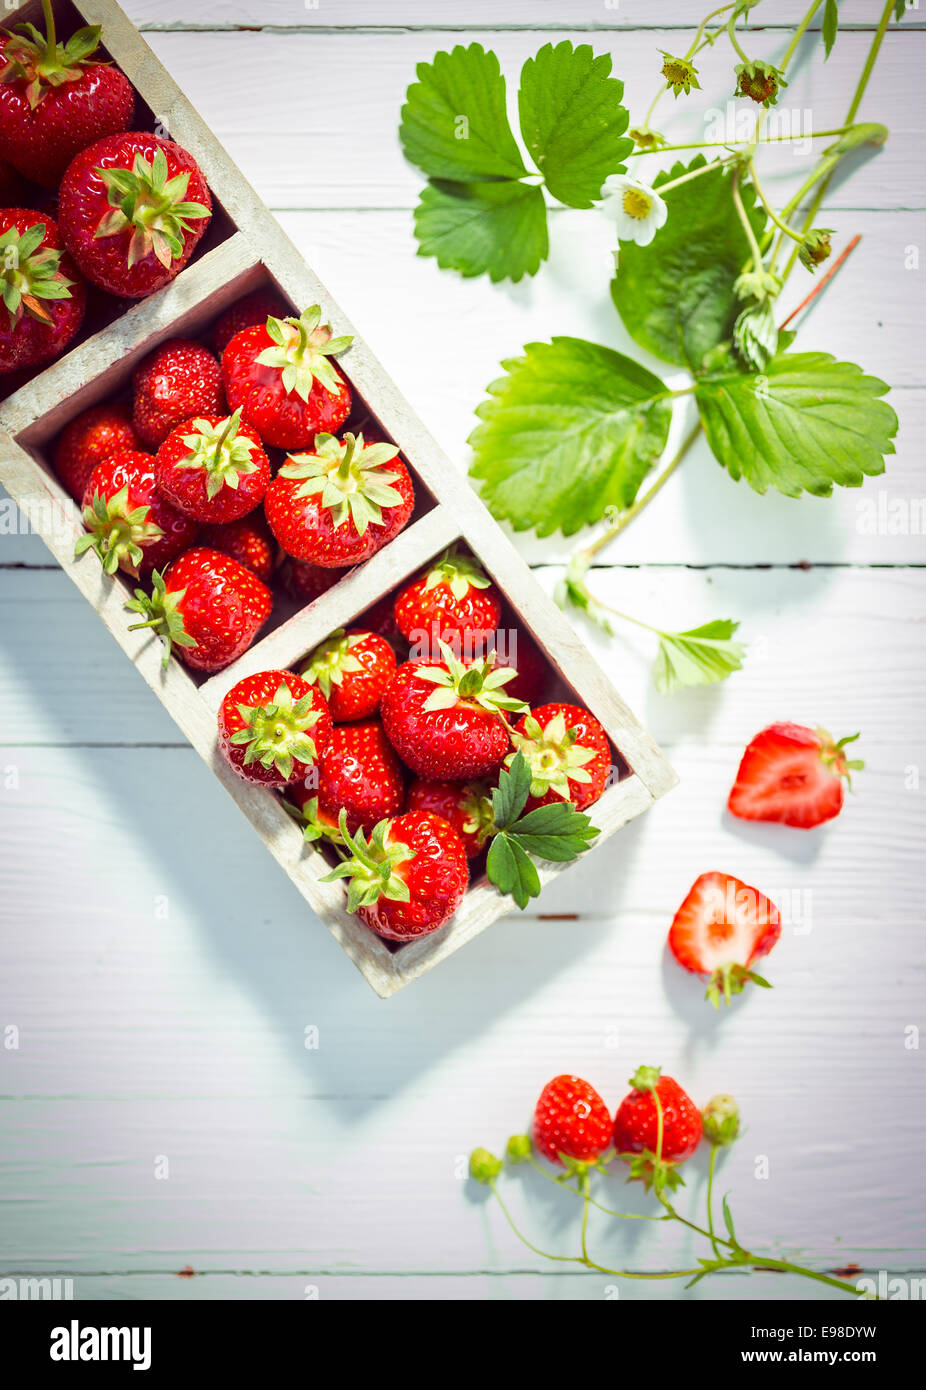 Visualización de deliciosas fresas rojas maduras en cajas de madera pintadas en blanco con placas verdes hojas frescas y flor y mitad berry mostrando la carne jugosa, vista desde arriba Foto de stock